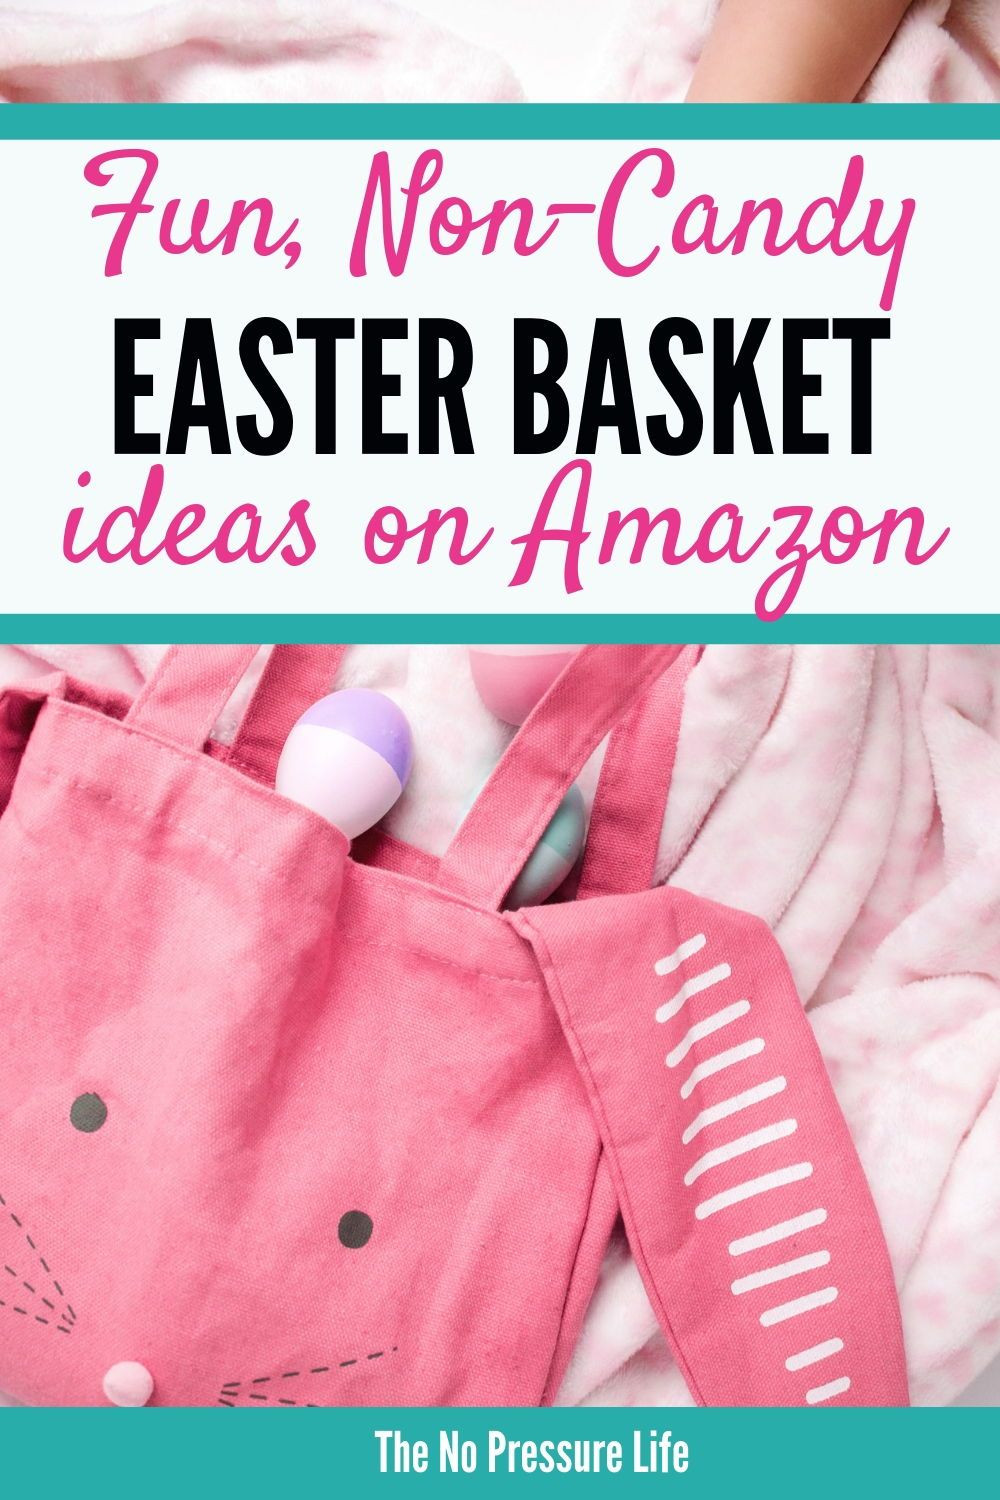 Last Minute Easter Basket Gift Ideas Kids
 Last Minute Easter Basket Ideas that Ship Free with Amazon